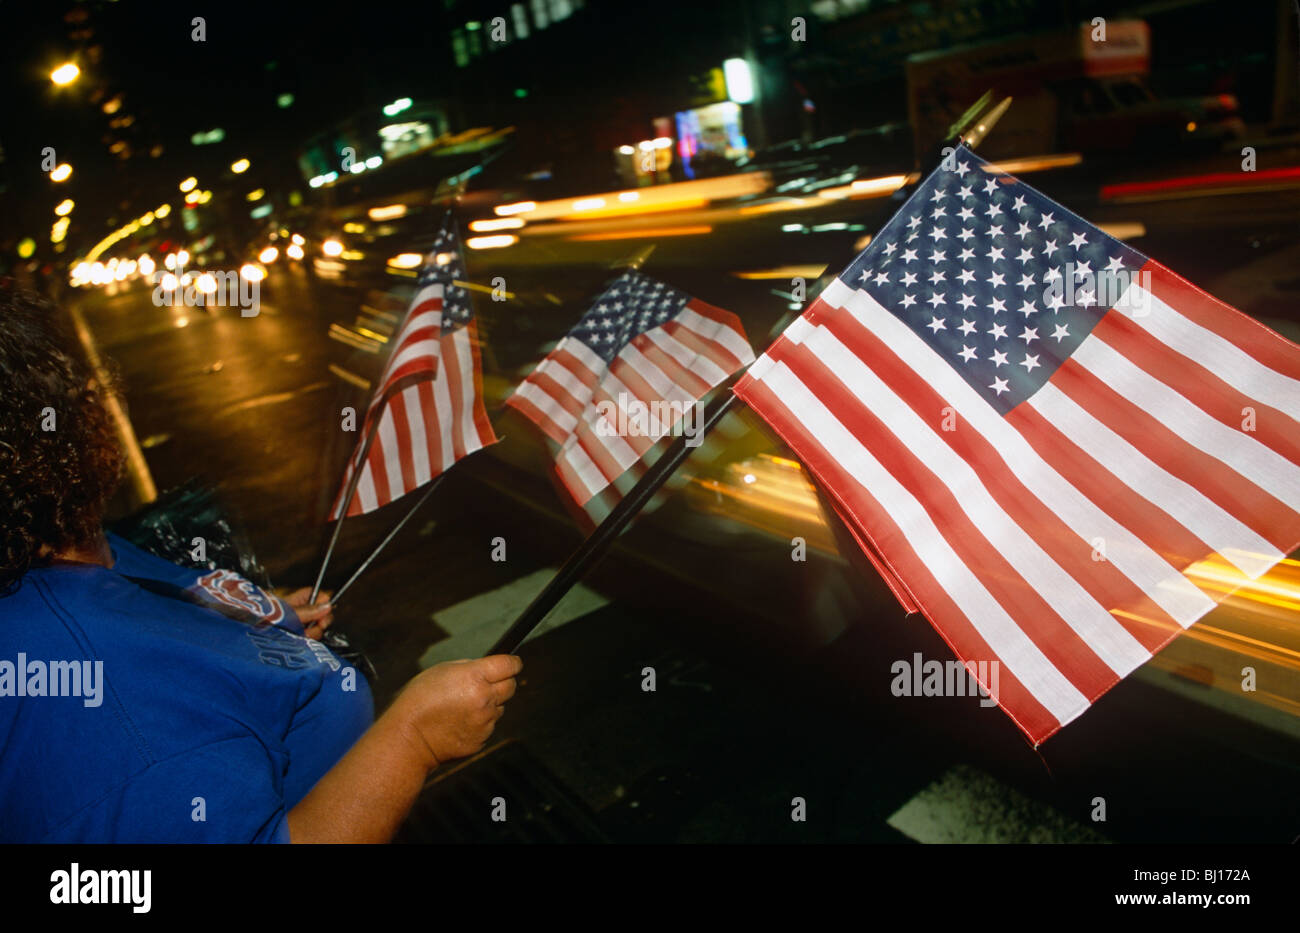 Las banderas americanas están en venta en la noche en las calles de Manhattan, a pocos días después de los atentados de las torres gemelas de Nueva York Foto de stock